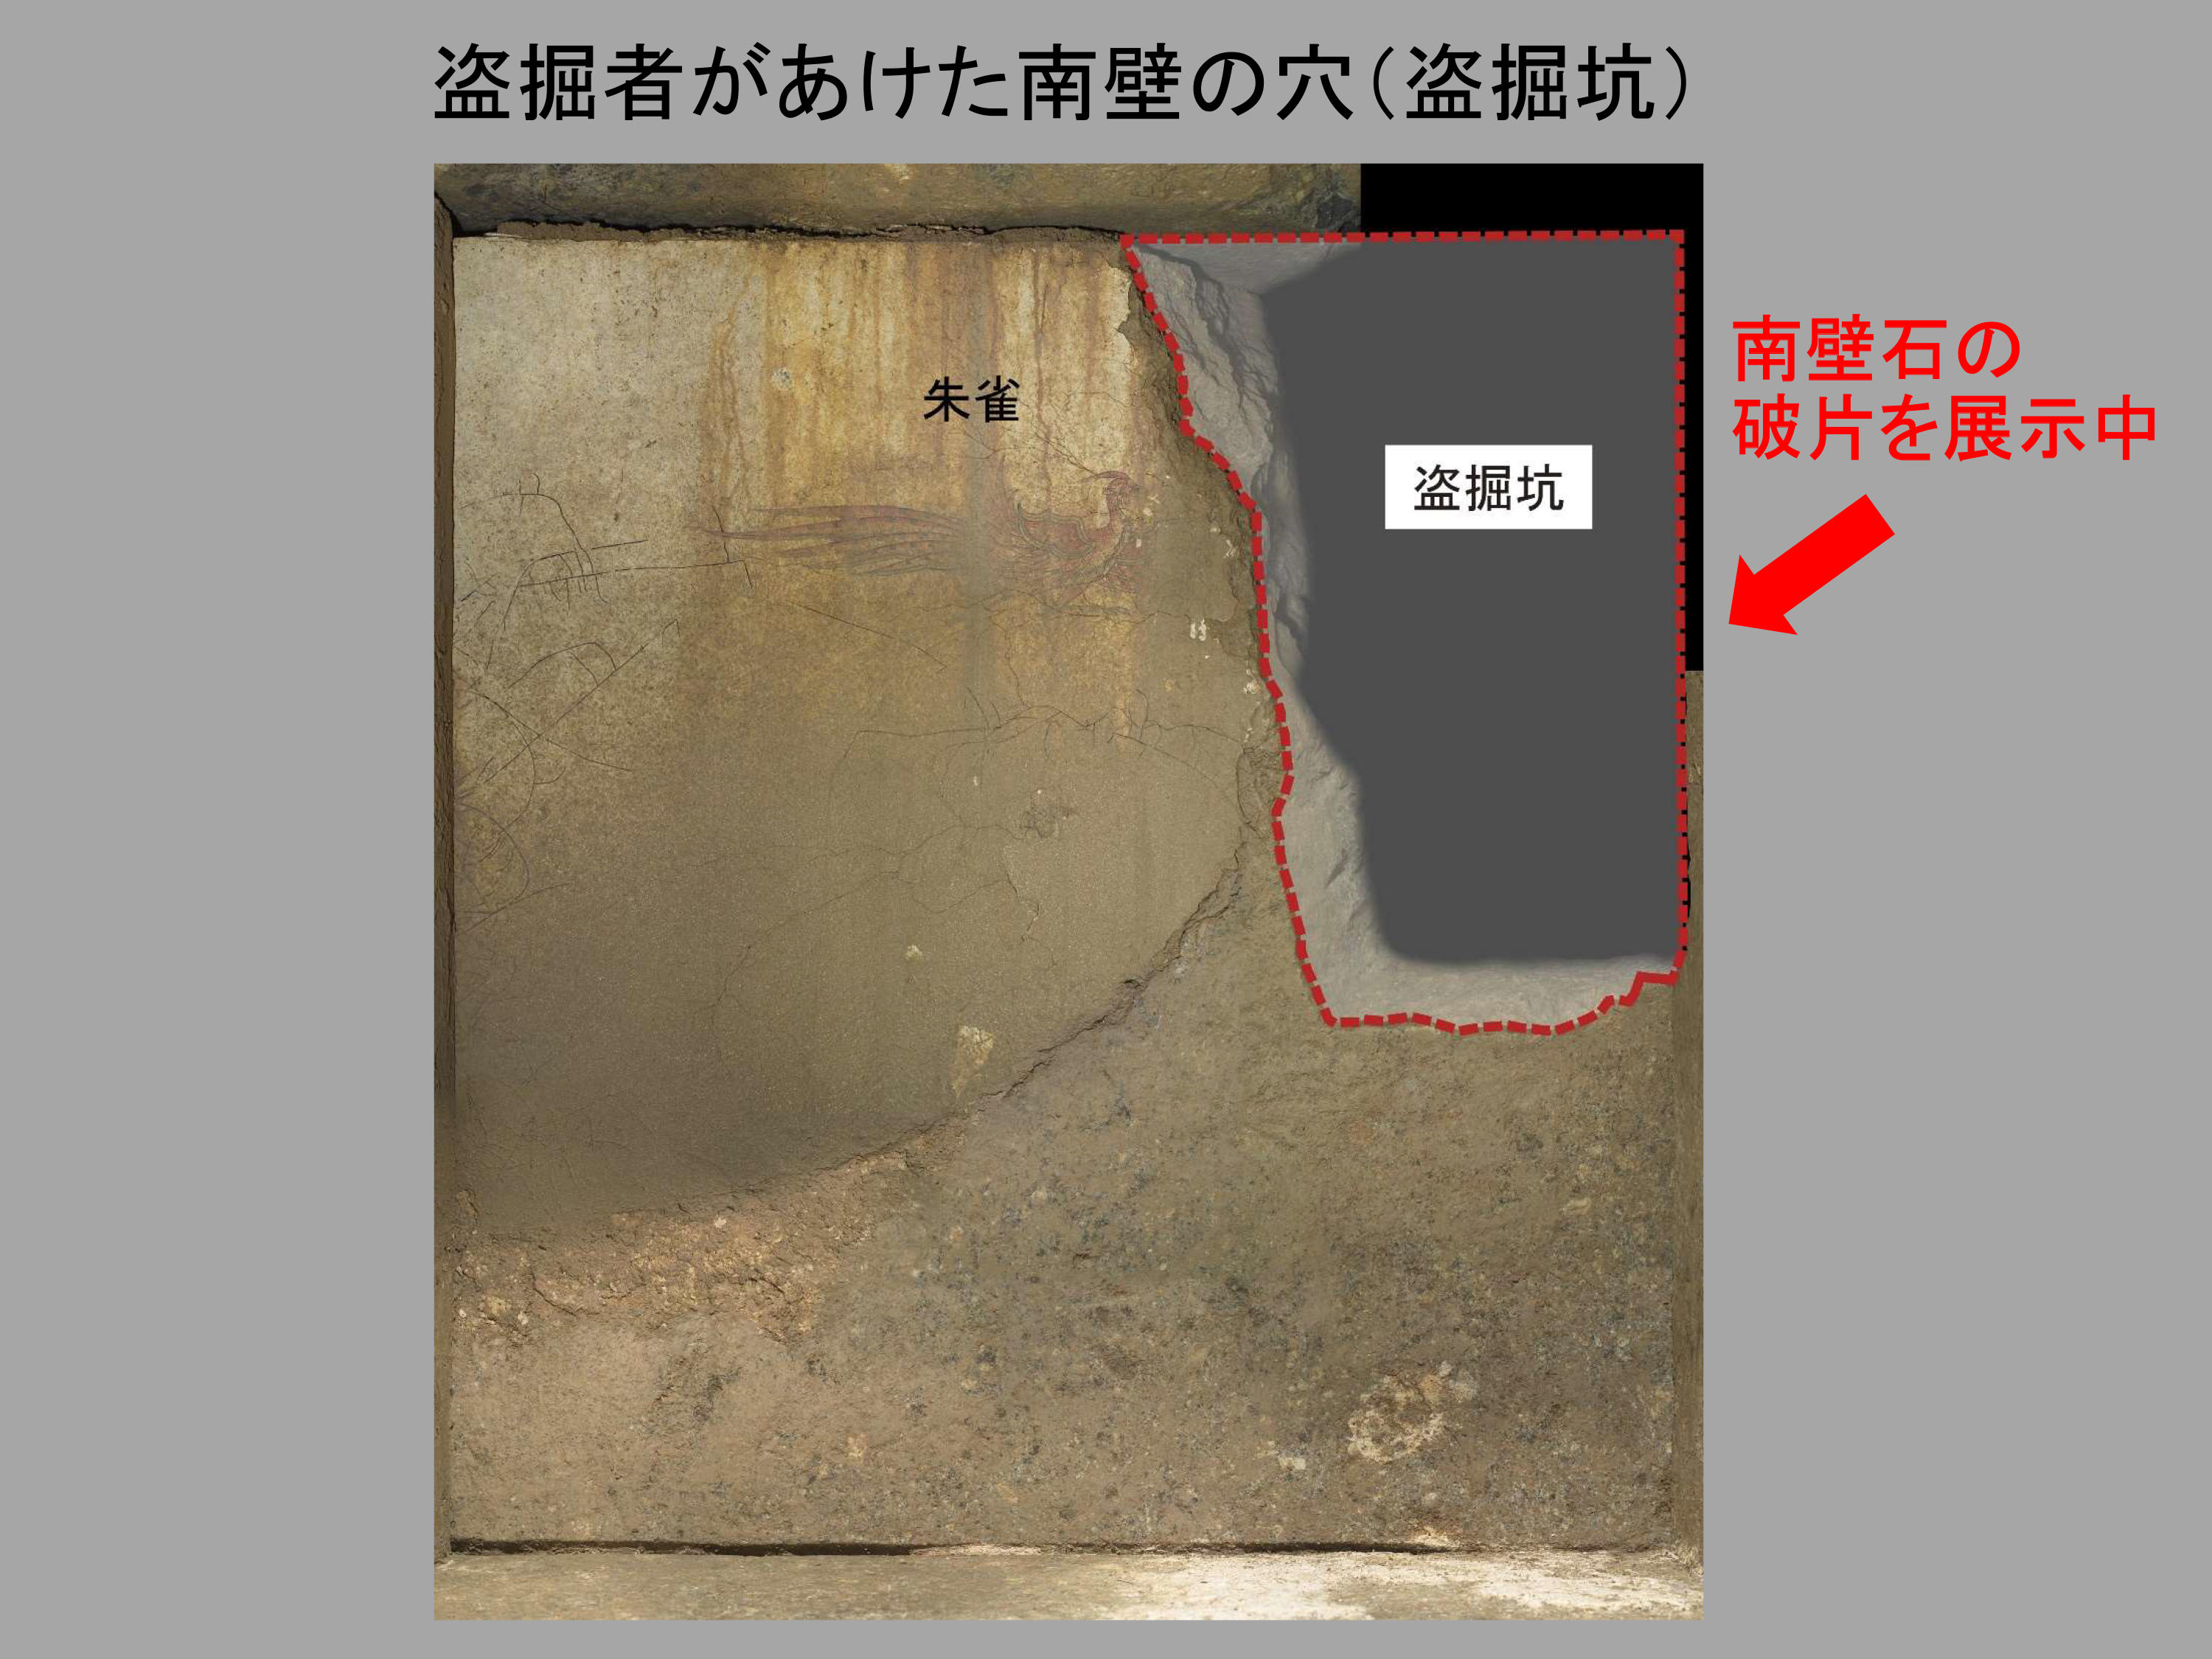 盗掘者があけた南壁の穴を示した図